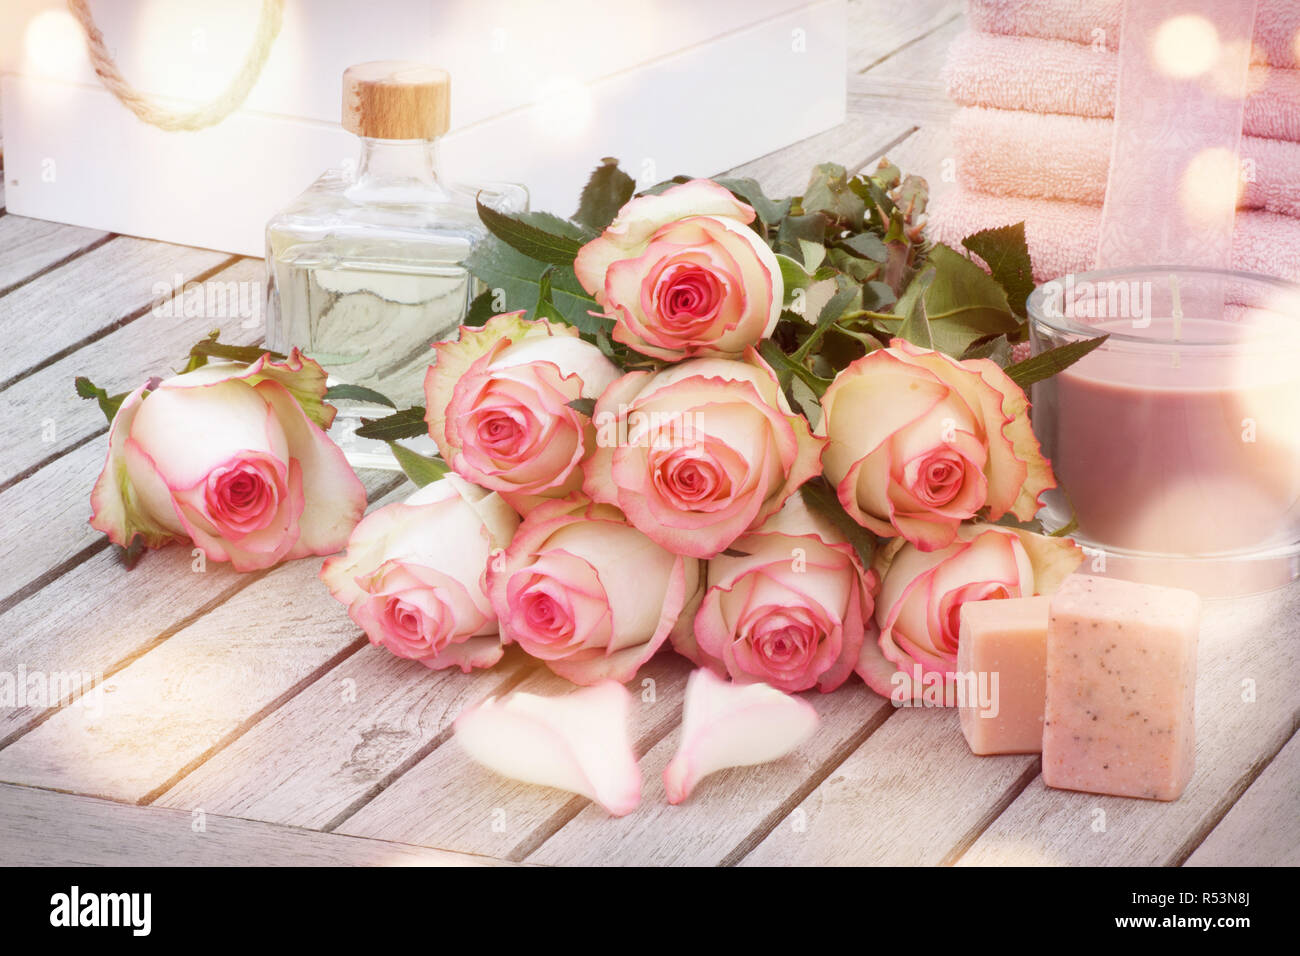 Spa productos artesanales jabones aromáticos y rosas Foto de stock